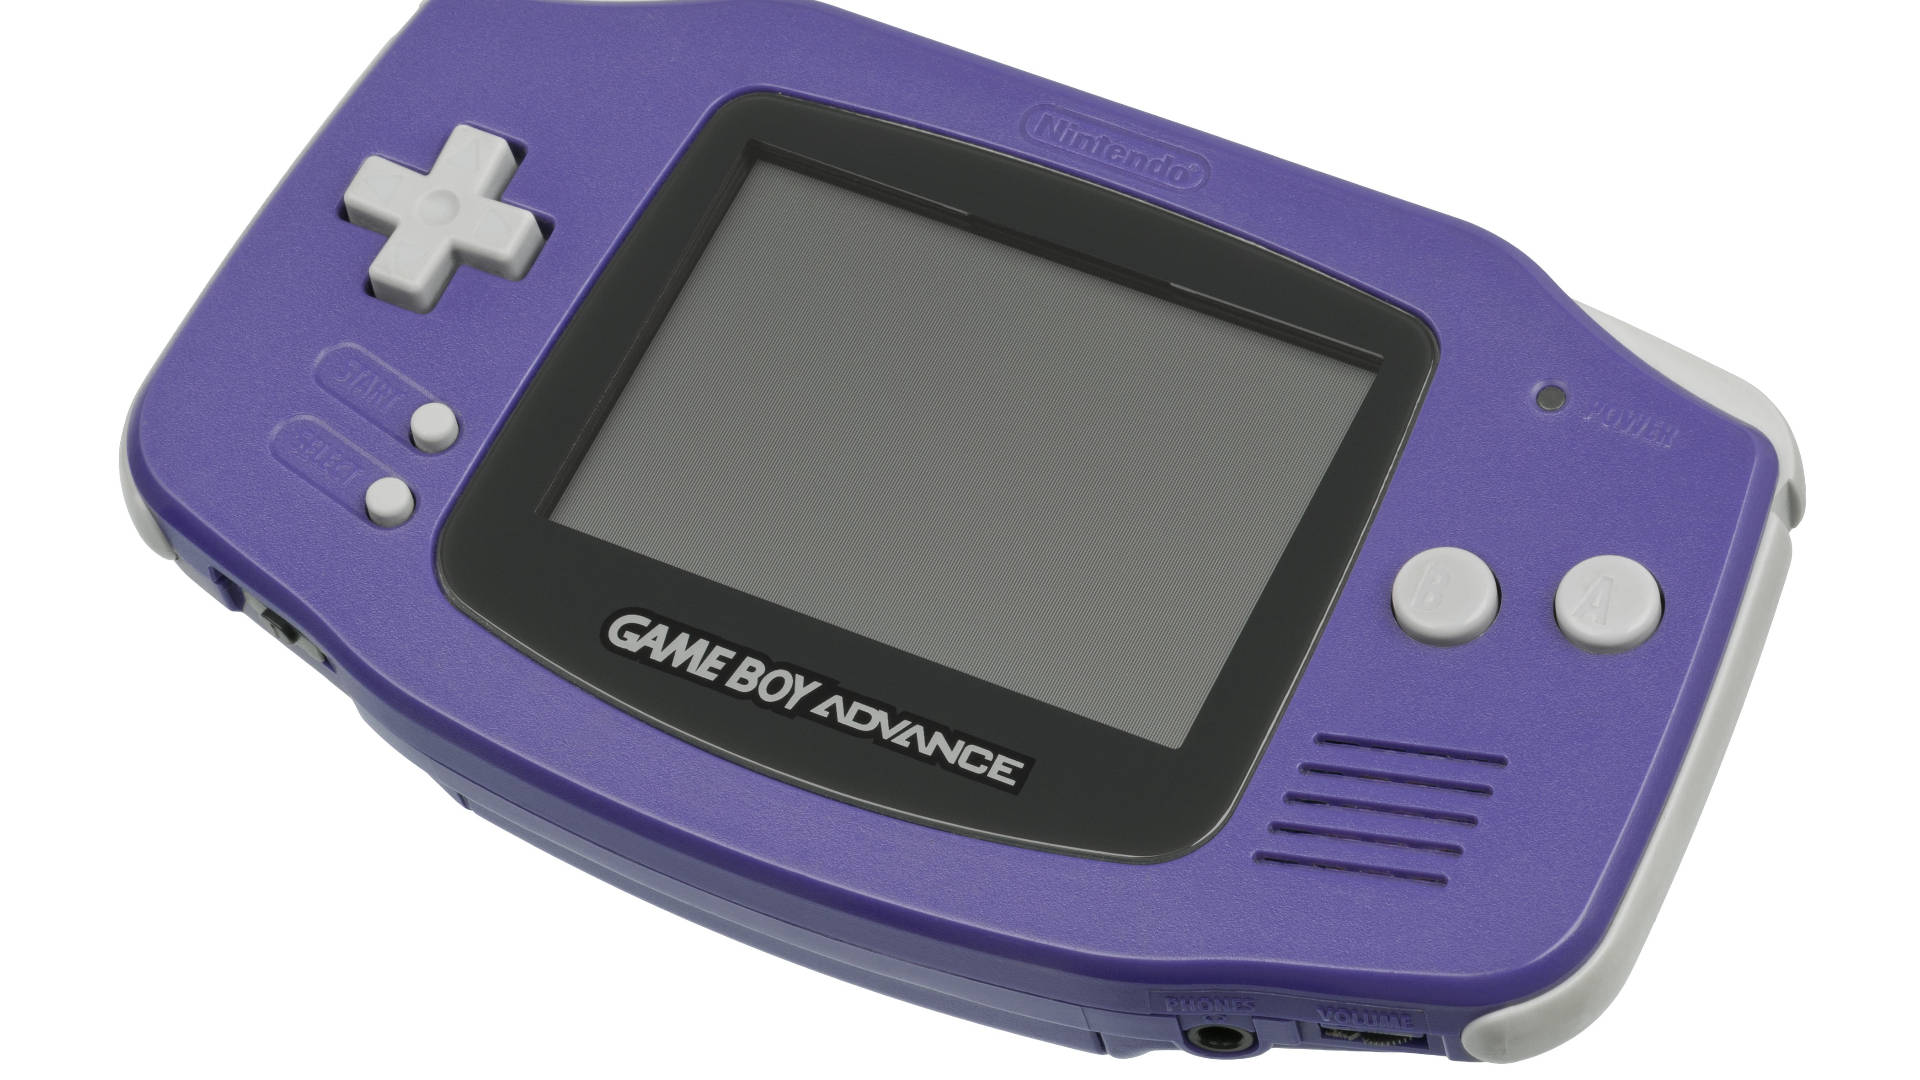 Fundode Tela Roxo Do Nintendo Game Boy Advance. Papel de Parede